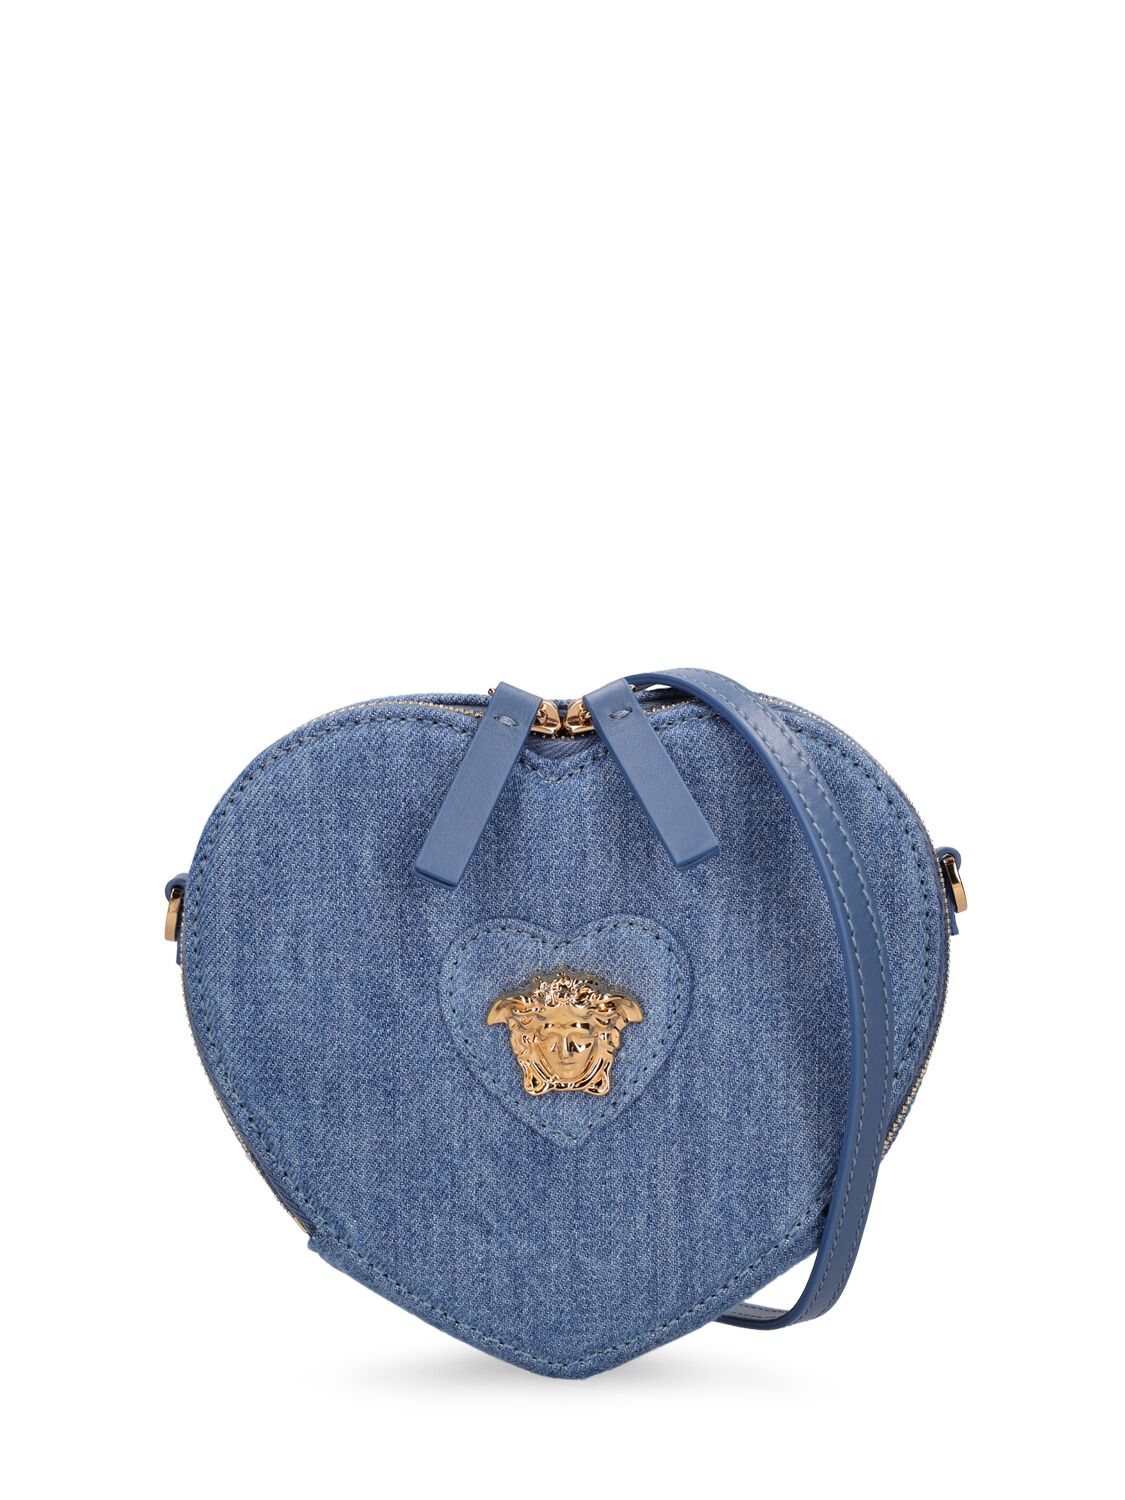 Image of Heart Denim Shoulder Bag